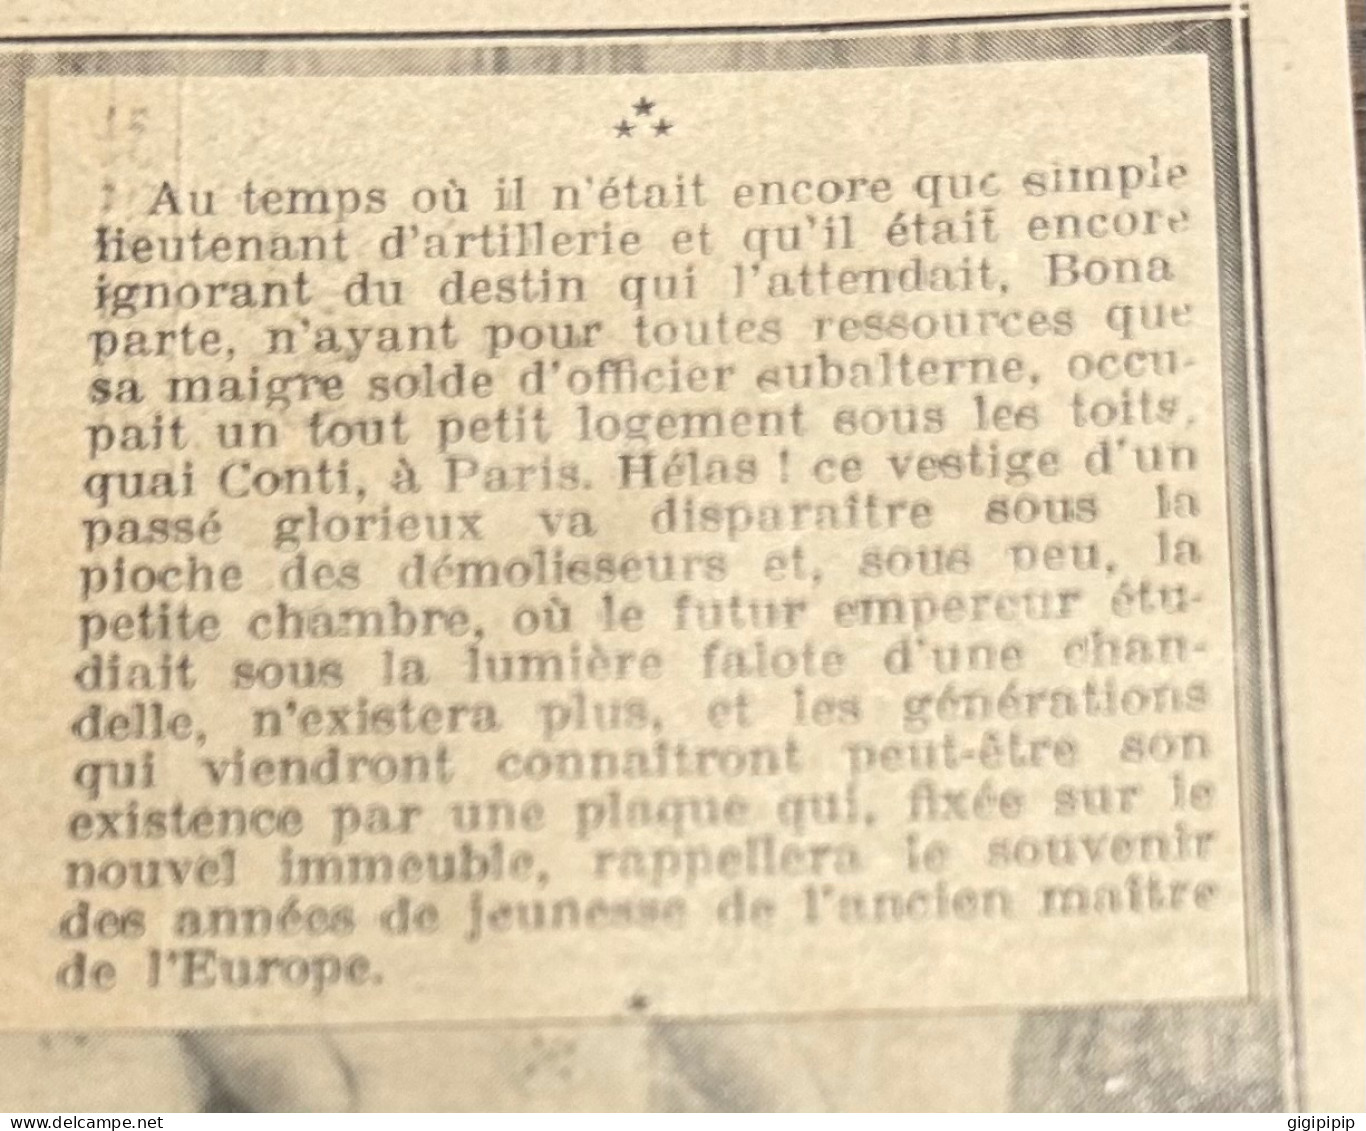 1930 GHI16 MAISON HABITEE PAR NAPOLÉON BONAPARTE QUAND IL ETAIT LIEUTENANT D'ARTILLERIE, A PARIS, QUI VA ETRE DEMOLIE - Collections